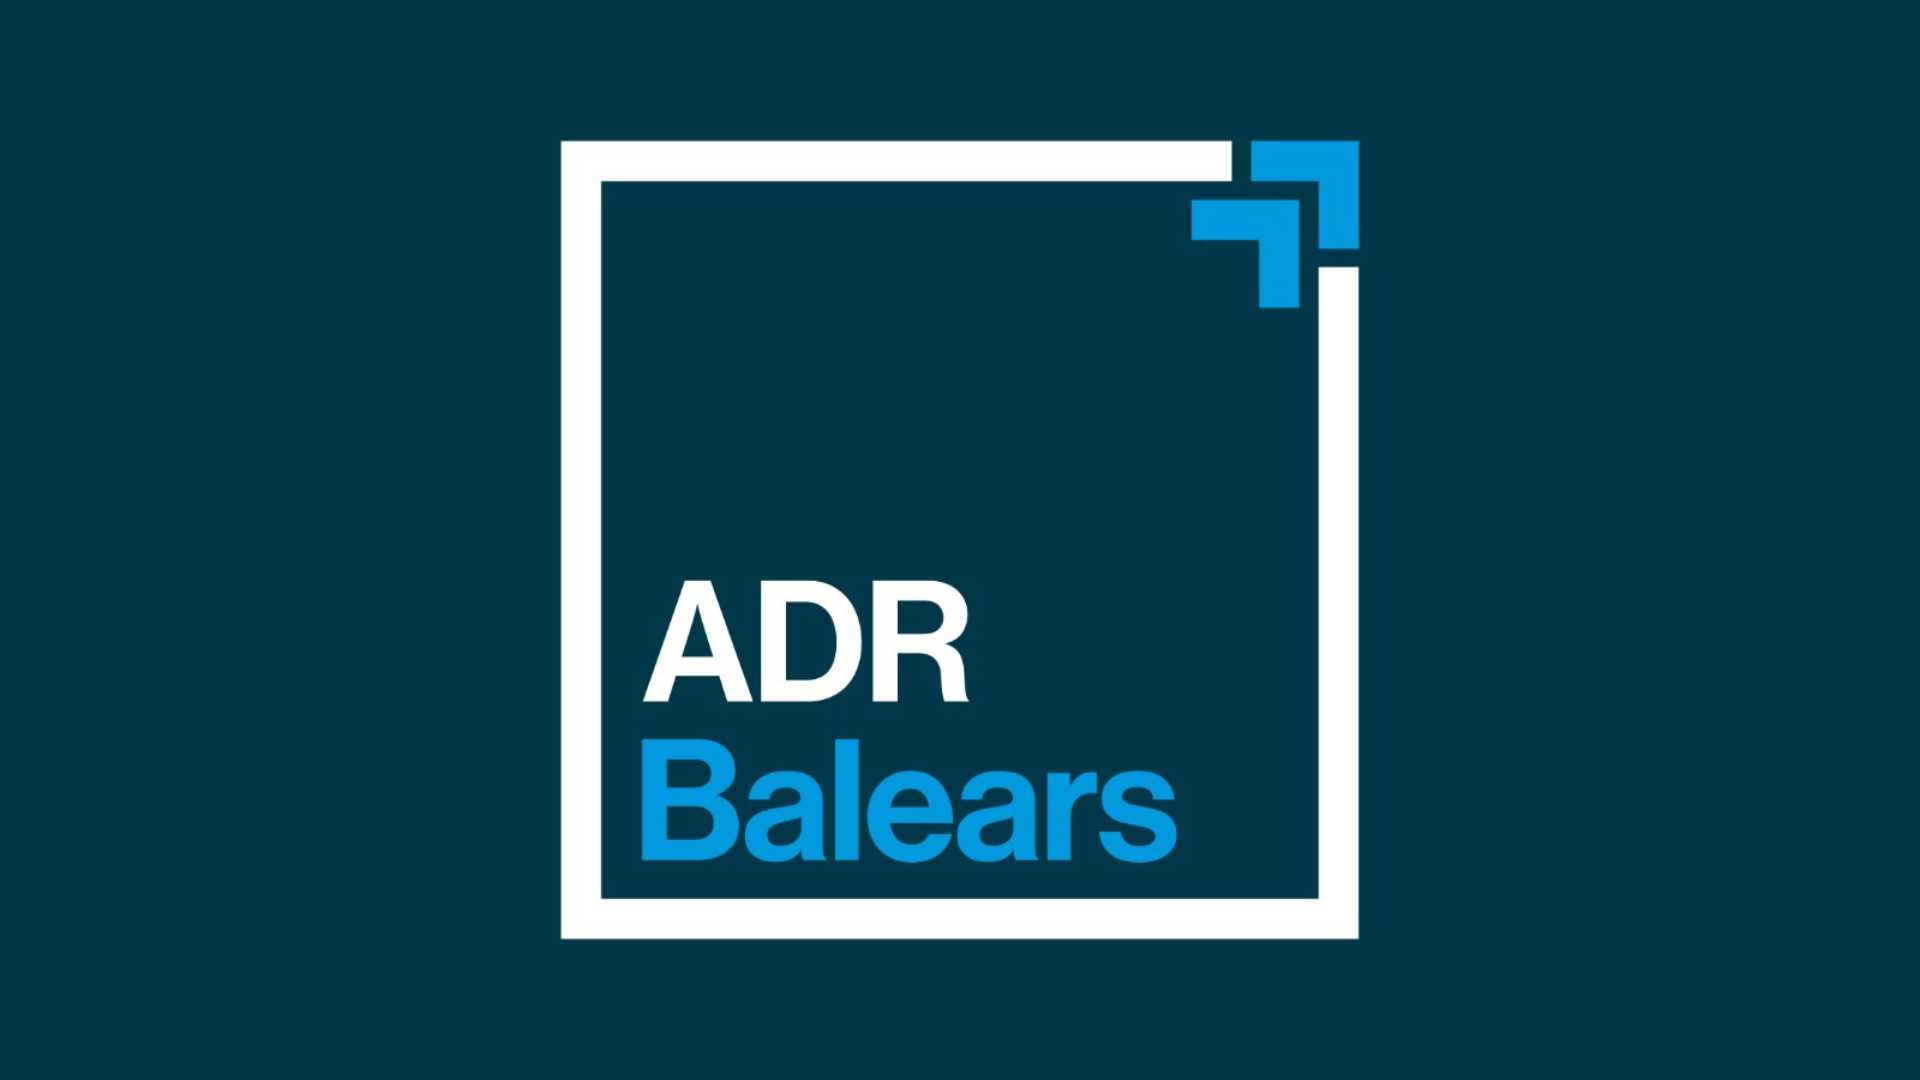 L’IDI passa a ser ADR Balears per posicionar-se com el punt d’atenció per a empreses i persones emprenedores a les Illes